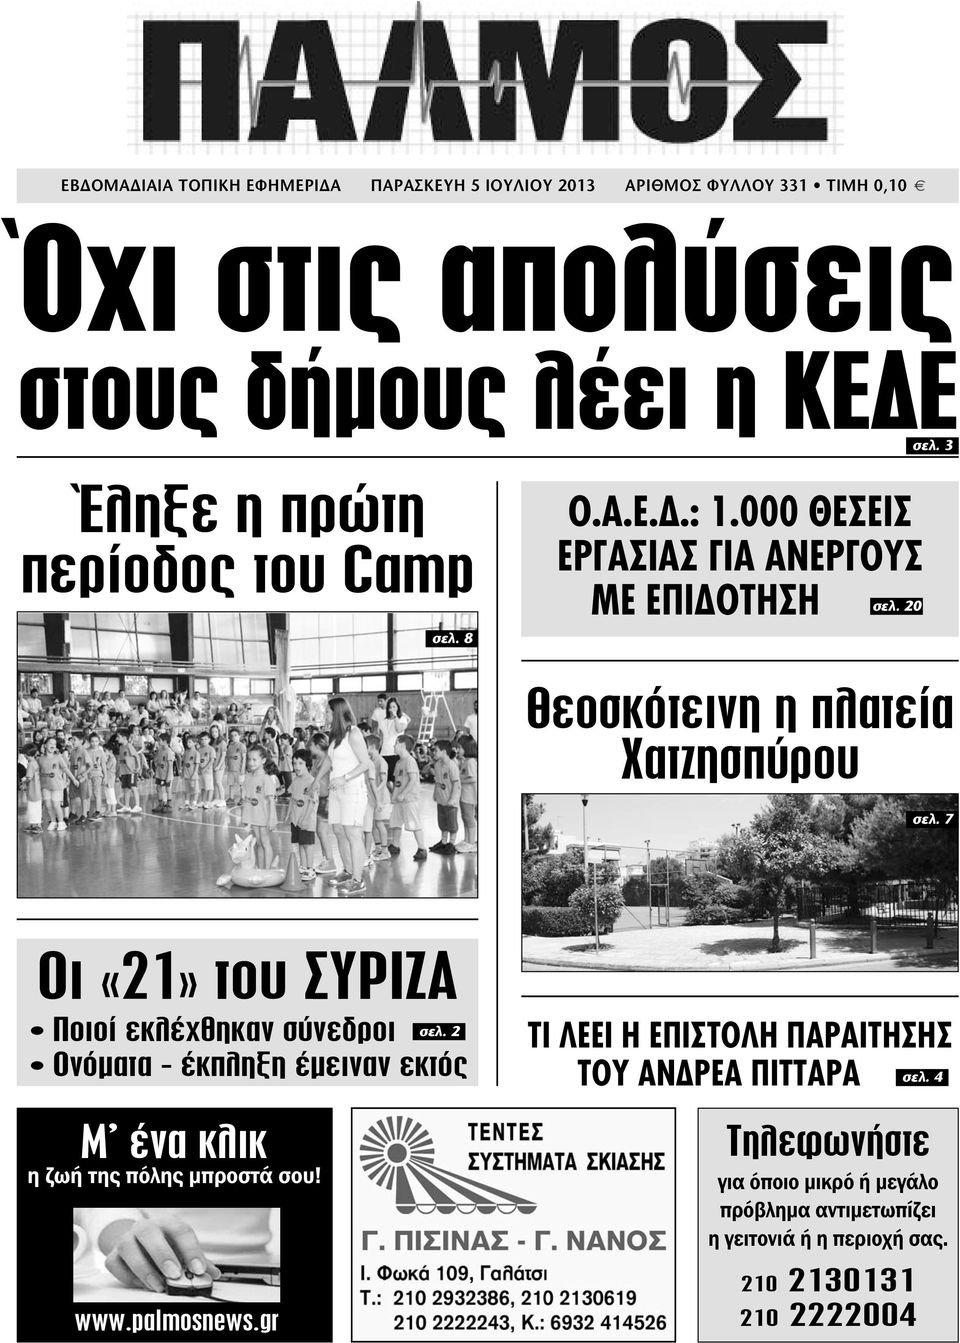 7 Οι «21» του ΣΥΡΙΖΑ Ποιοί εκλέχθηκαν σύνεδροι σελ. 2 Ονόµατα - έκπληξη έµειναν εκτός Μ ένα κλικ η ζωή της πόλης µπροστά σου! www.palmosnews.